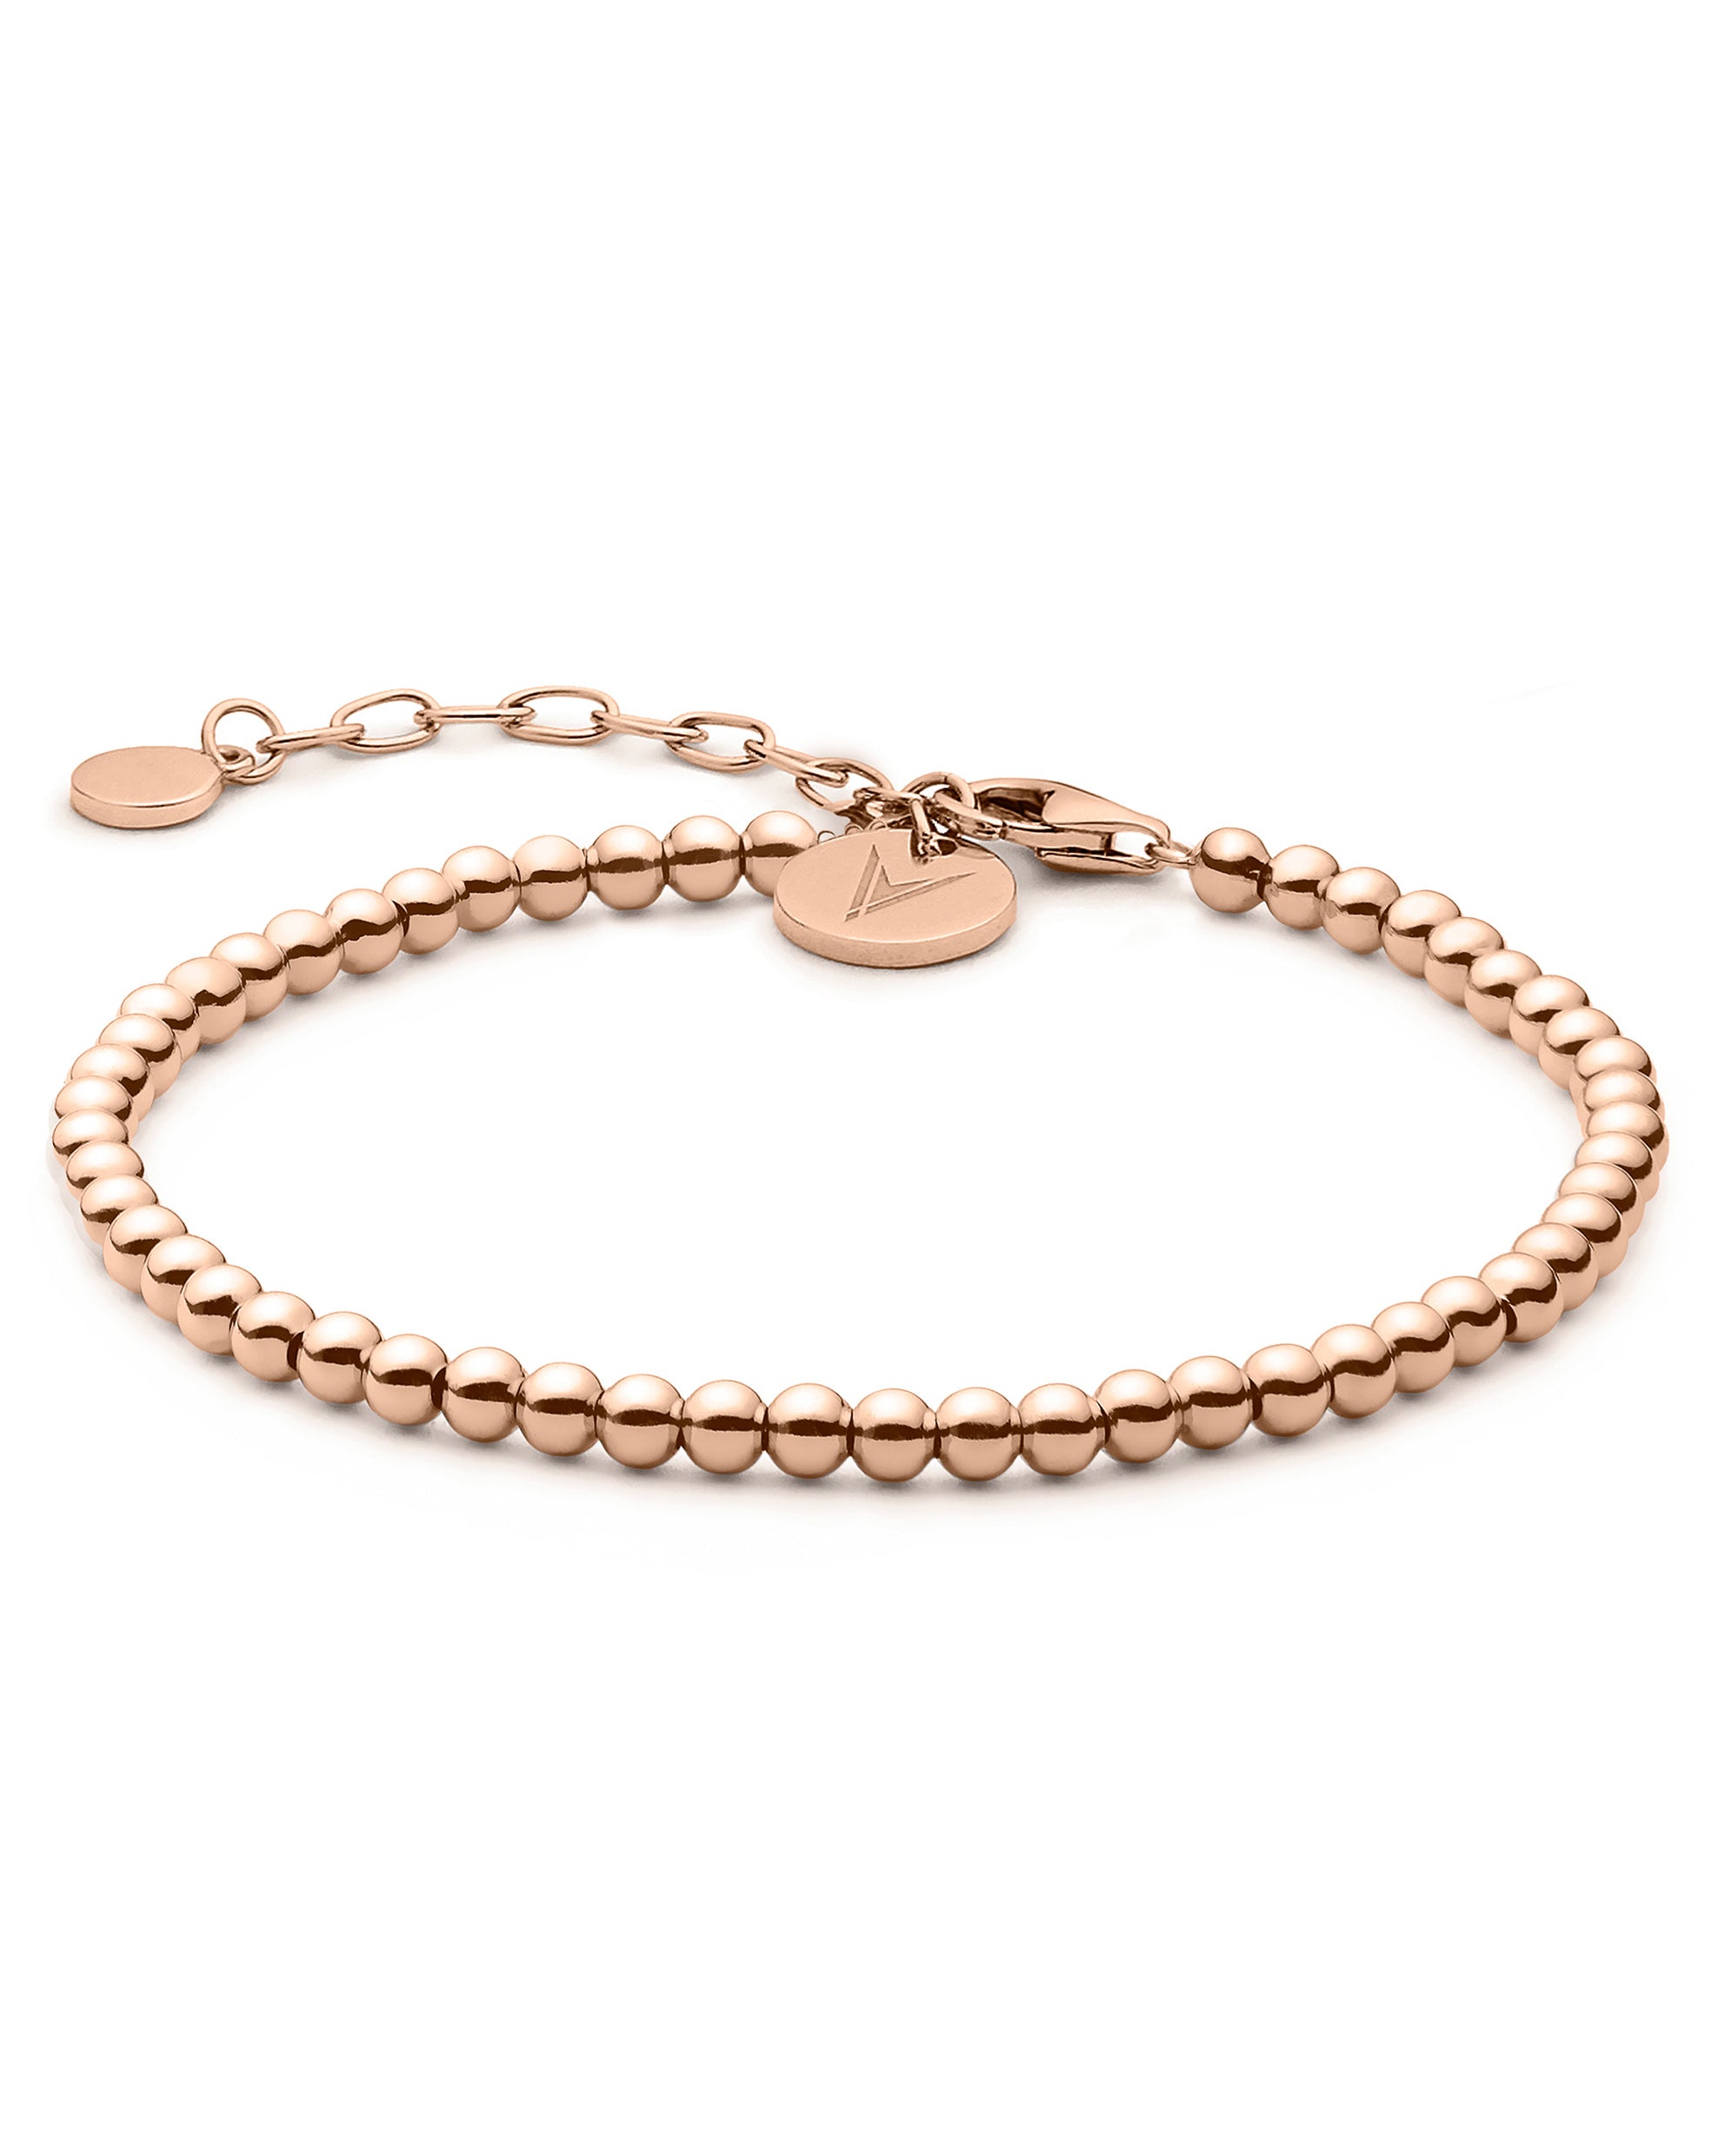 The Beaded Bracelet - Rose Gold fine designer jewelry for men and women